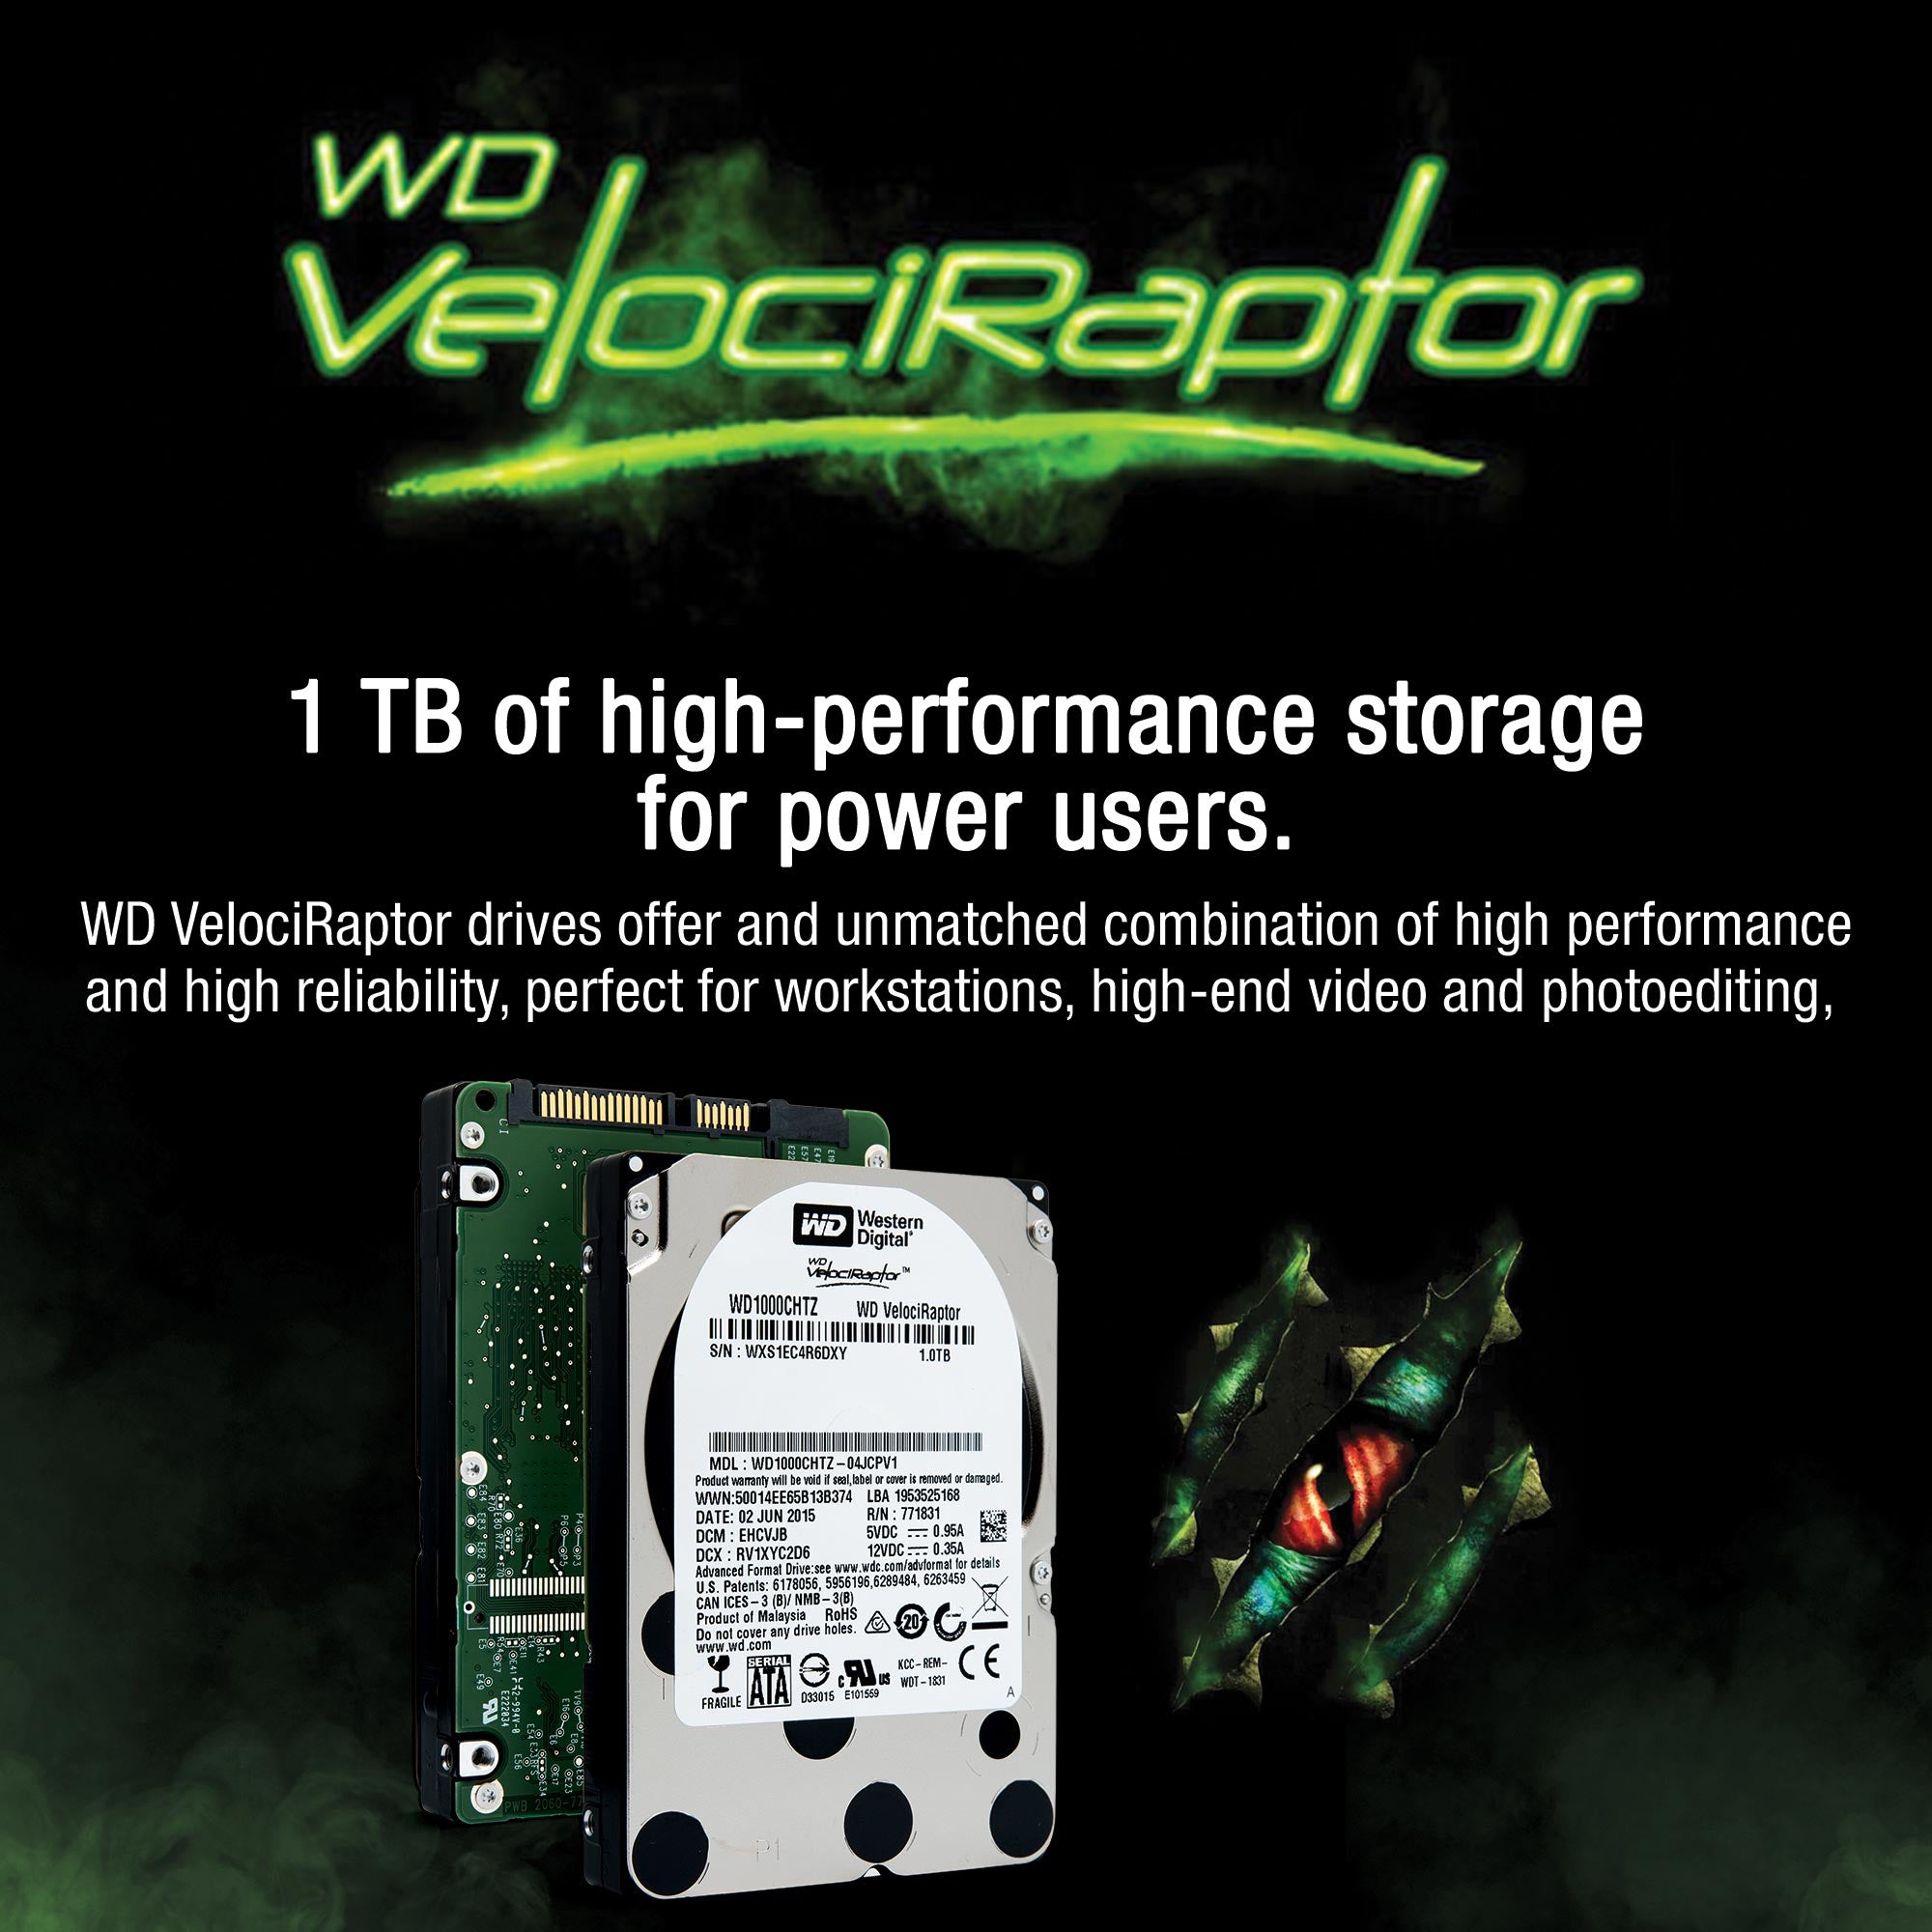 Western Digital VelociRaptor WD1000CHTZ 1TB 10K RPM SATA 6Gb/s 64MB 2.5" Hard Drive